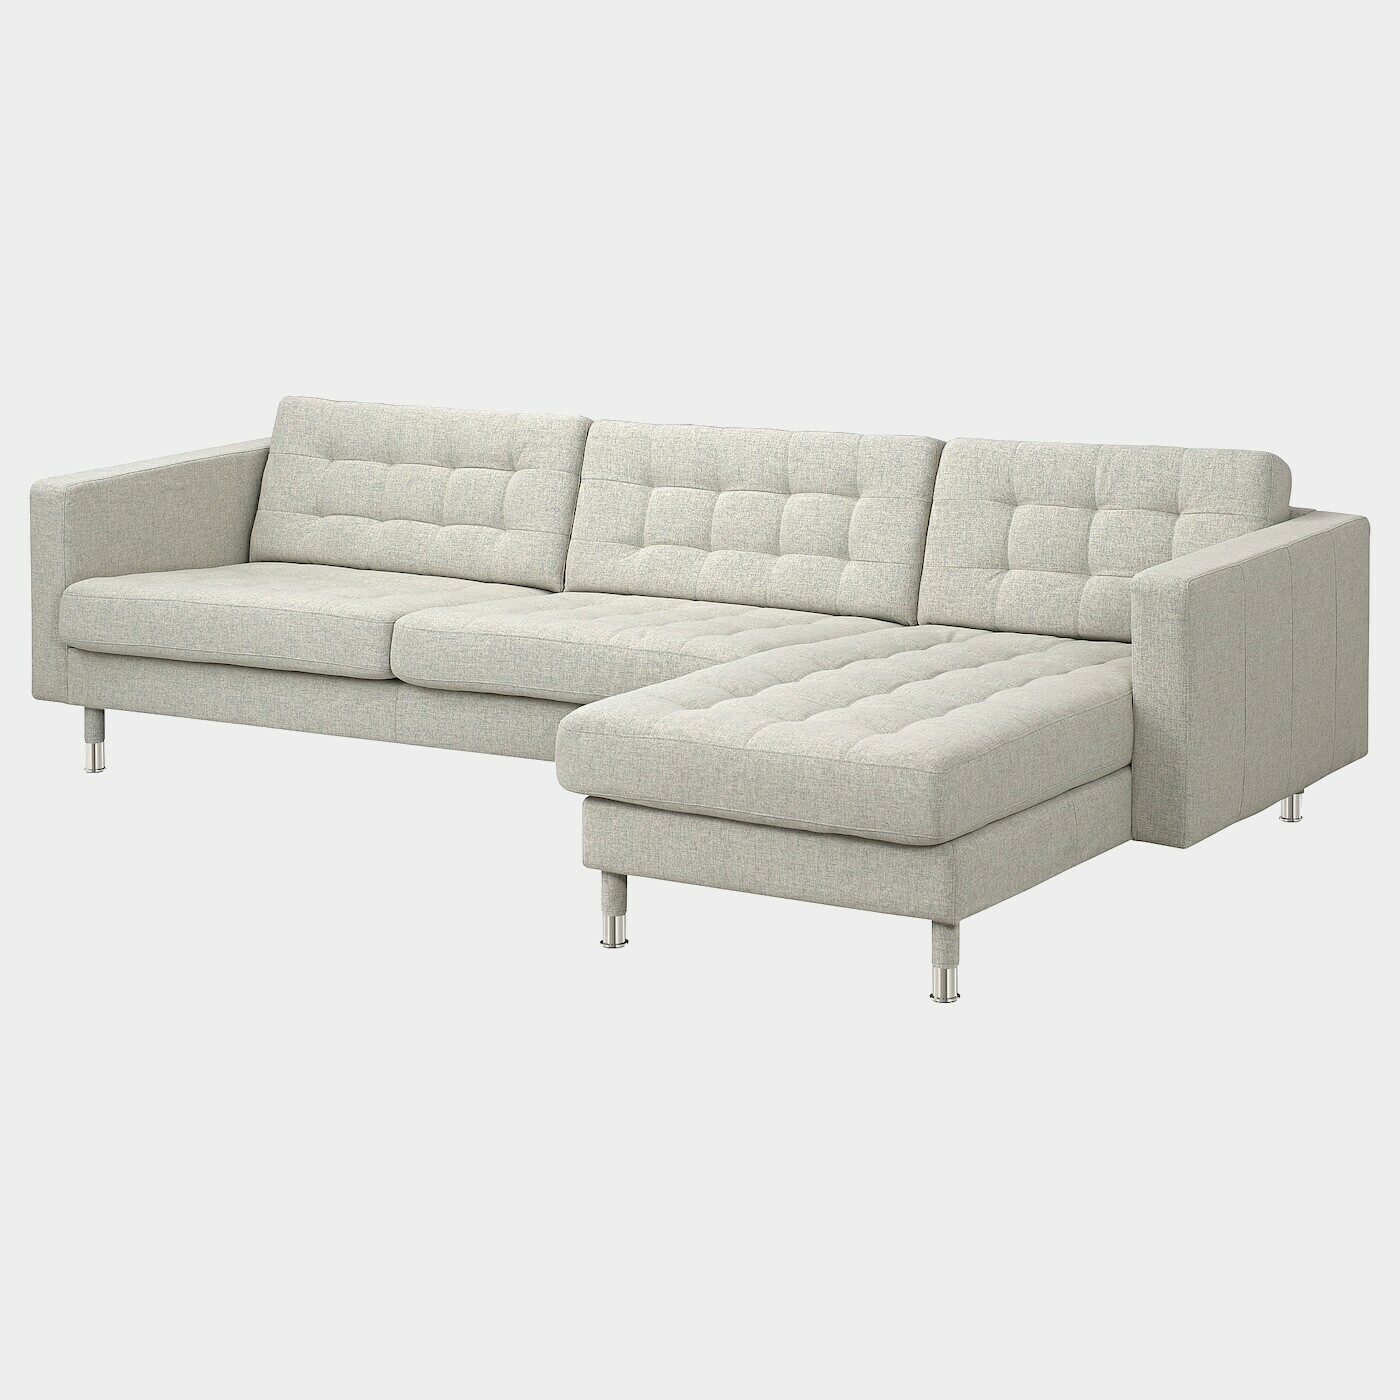 LANDSKRONA 4er-Sofa mit Récamiere  -  - Möbel Ideen für dein Zuhause von Home Trends. Möbel Trends von Social Media Influencer für dein Skandi Zuhause.